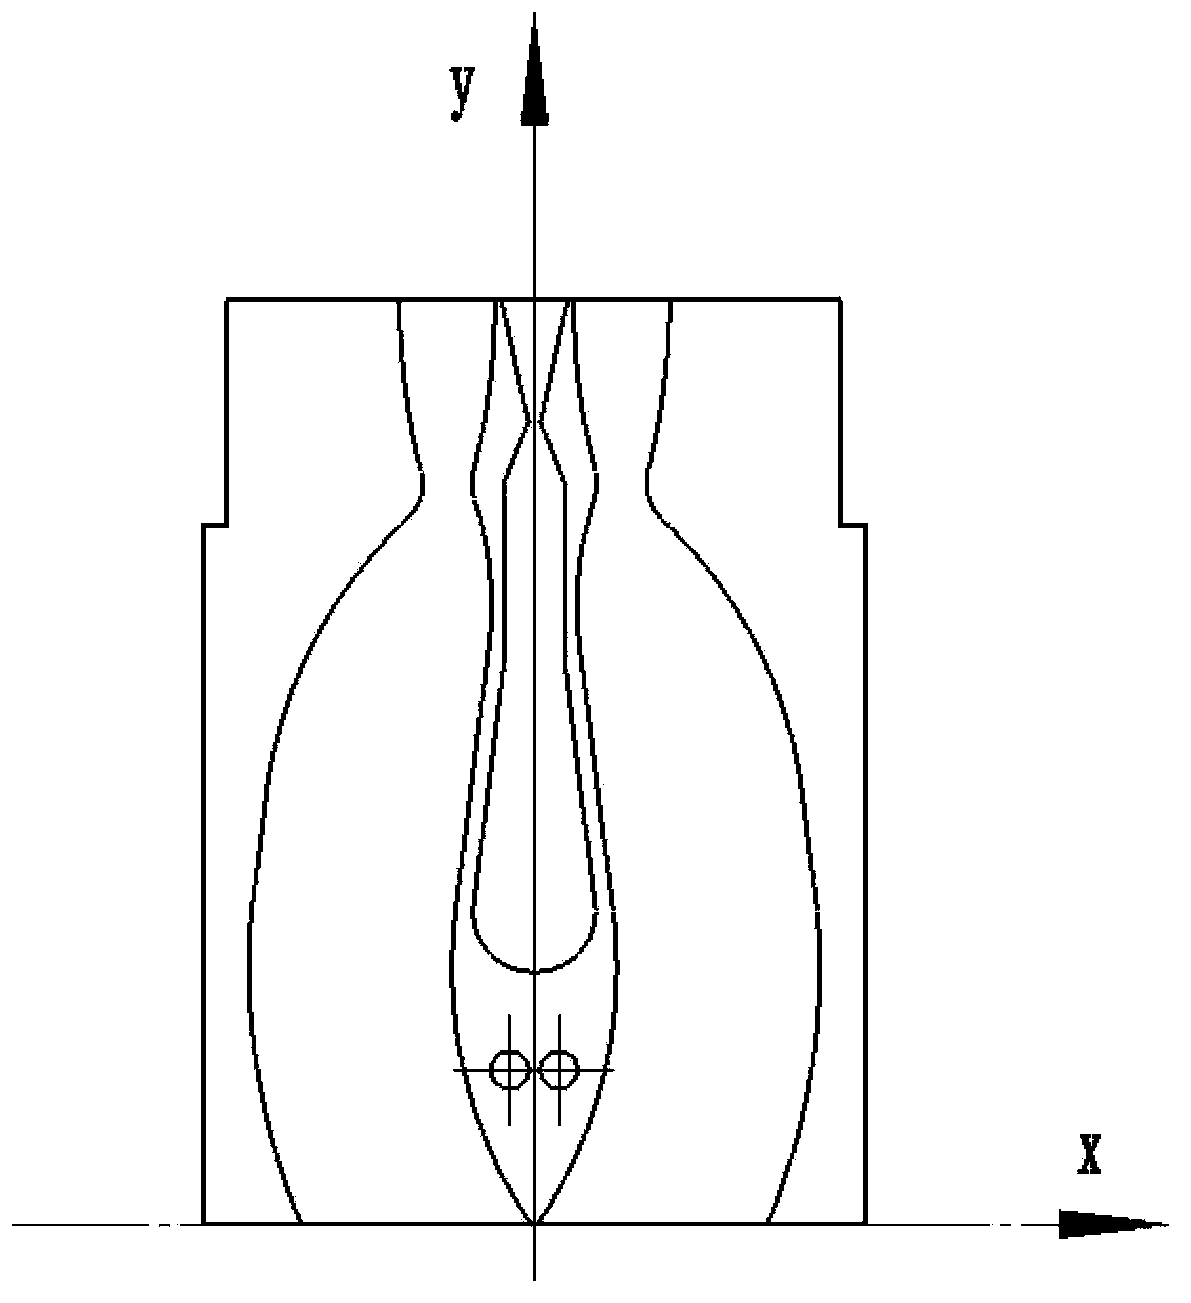 Concurrent flow ultrasonic oxygen-iodine mixing nozzle